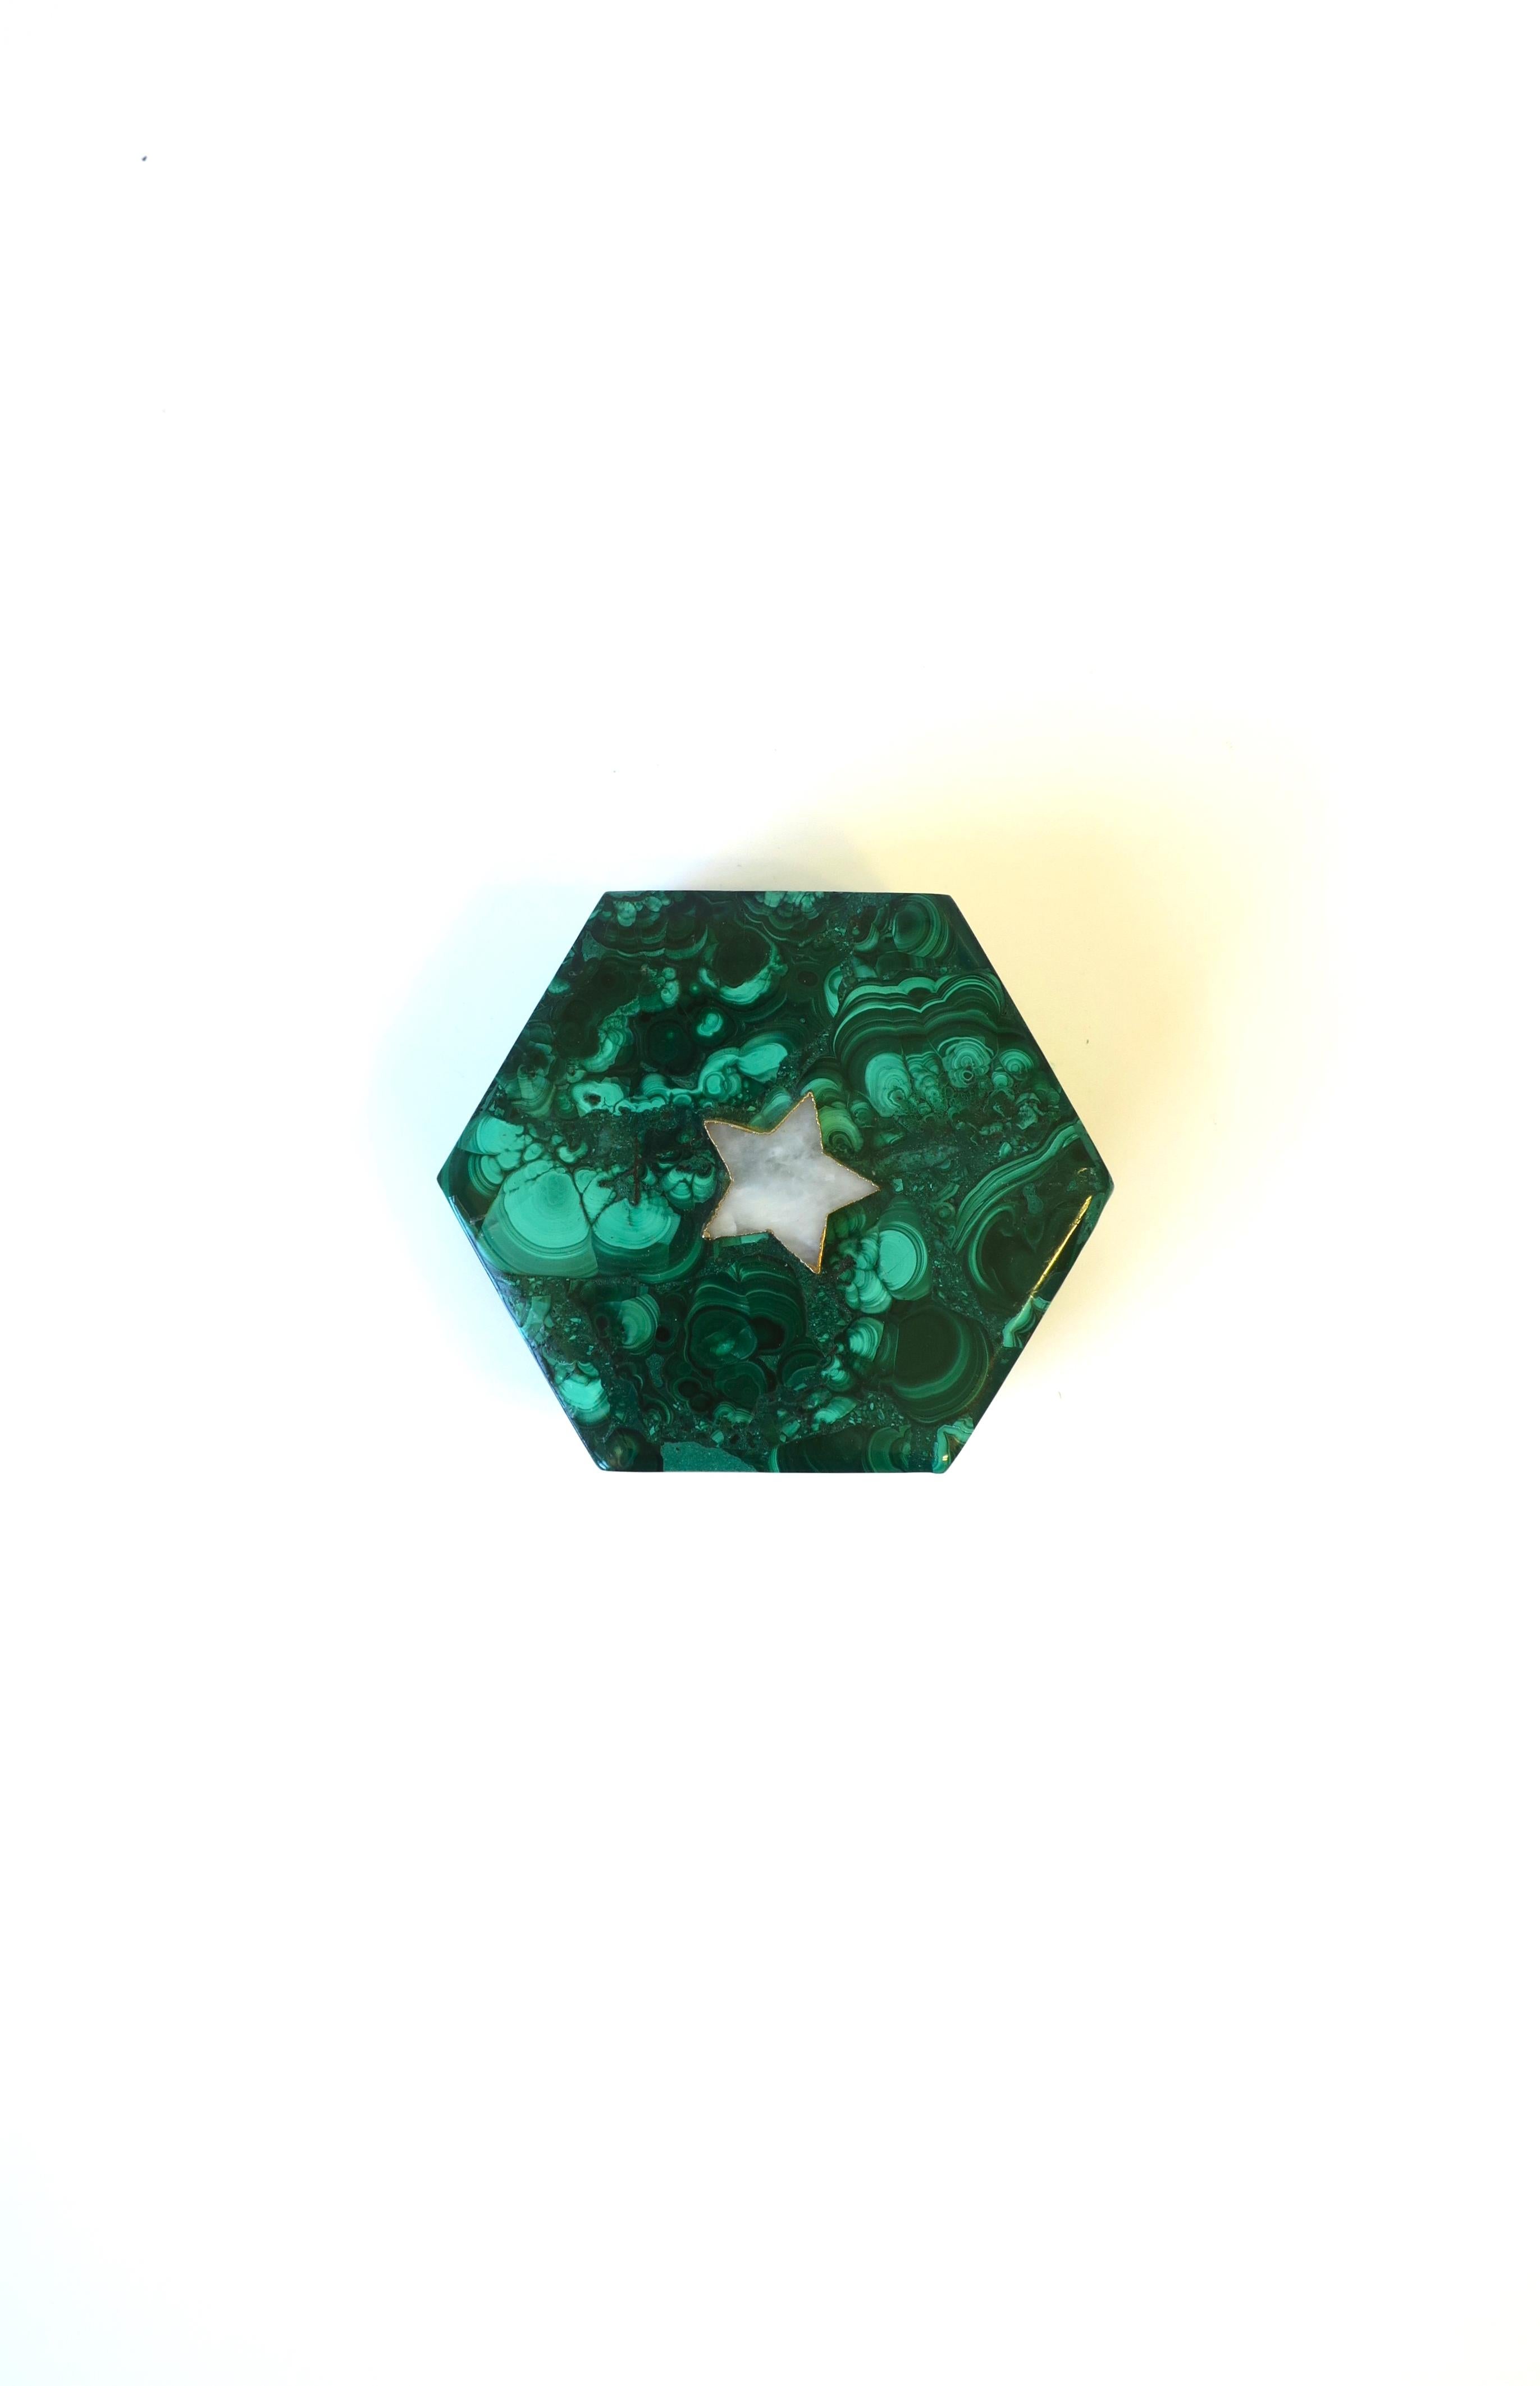 Une très belle et substantielle boîte à bijoux ou décorative en malachite verte, vers la fin du 20e siècle. Cette boîte en malachite verte est de forme hexagonale avec une étoile en marbre blanc onyx et des détails en métal doré sur le couvercle. La